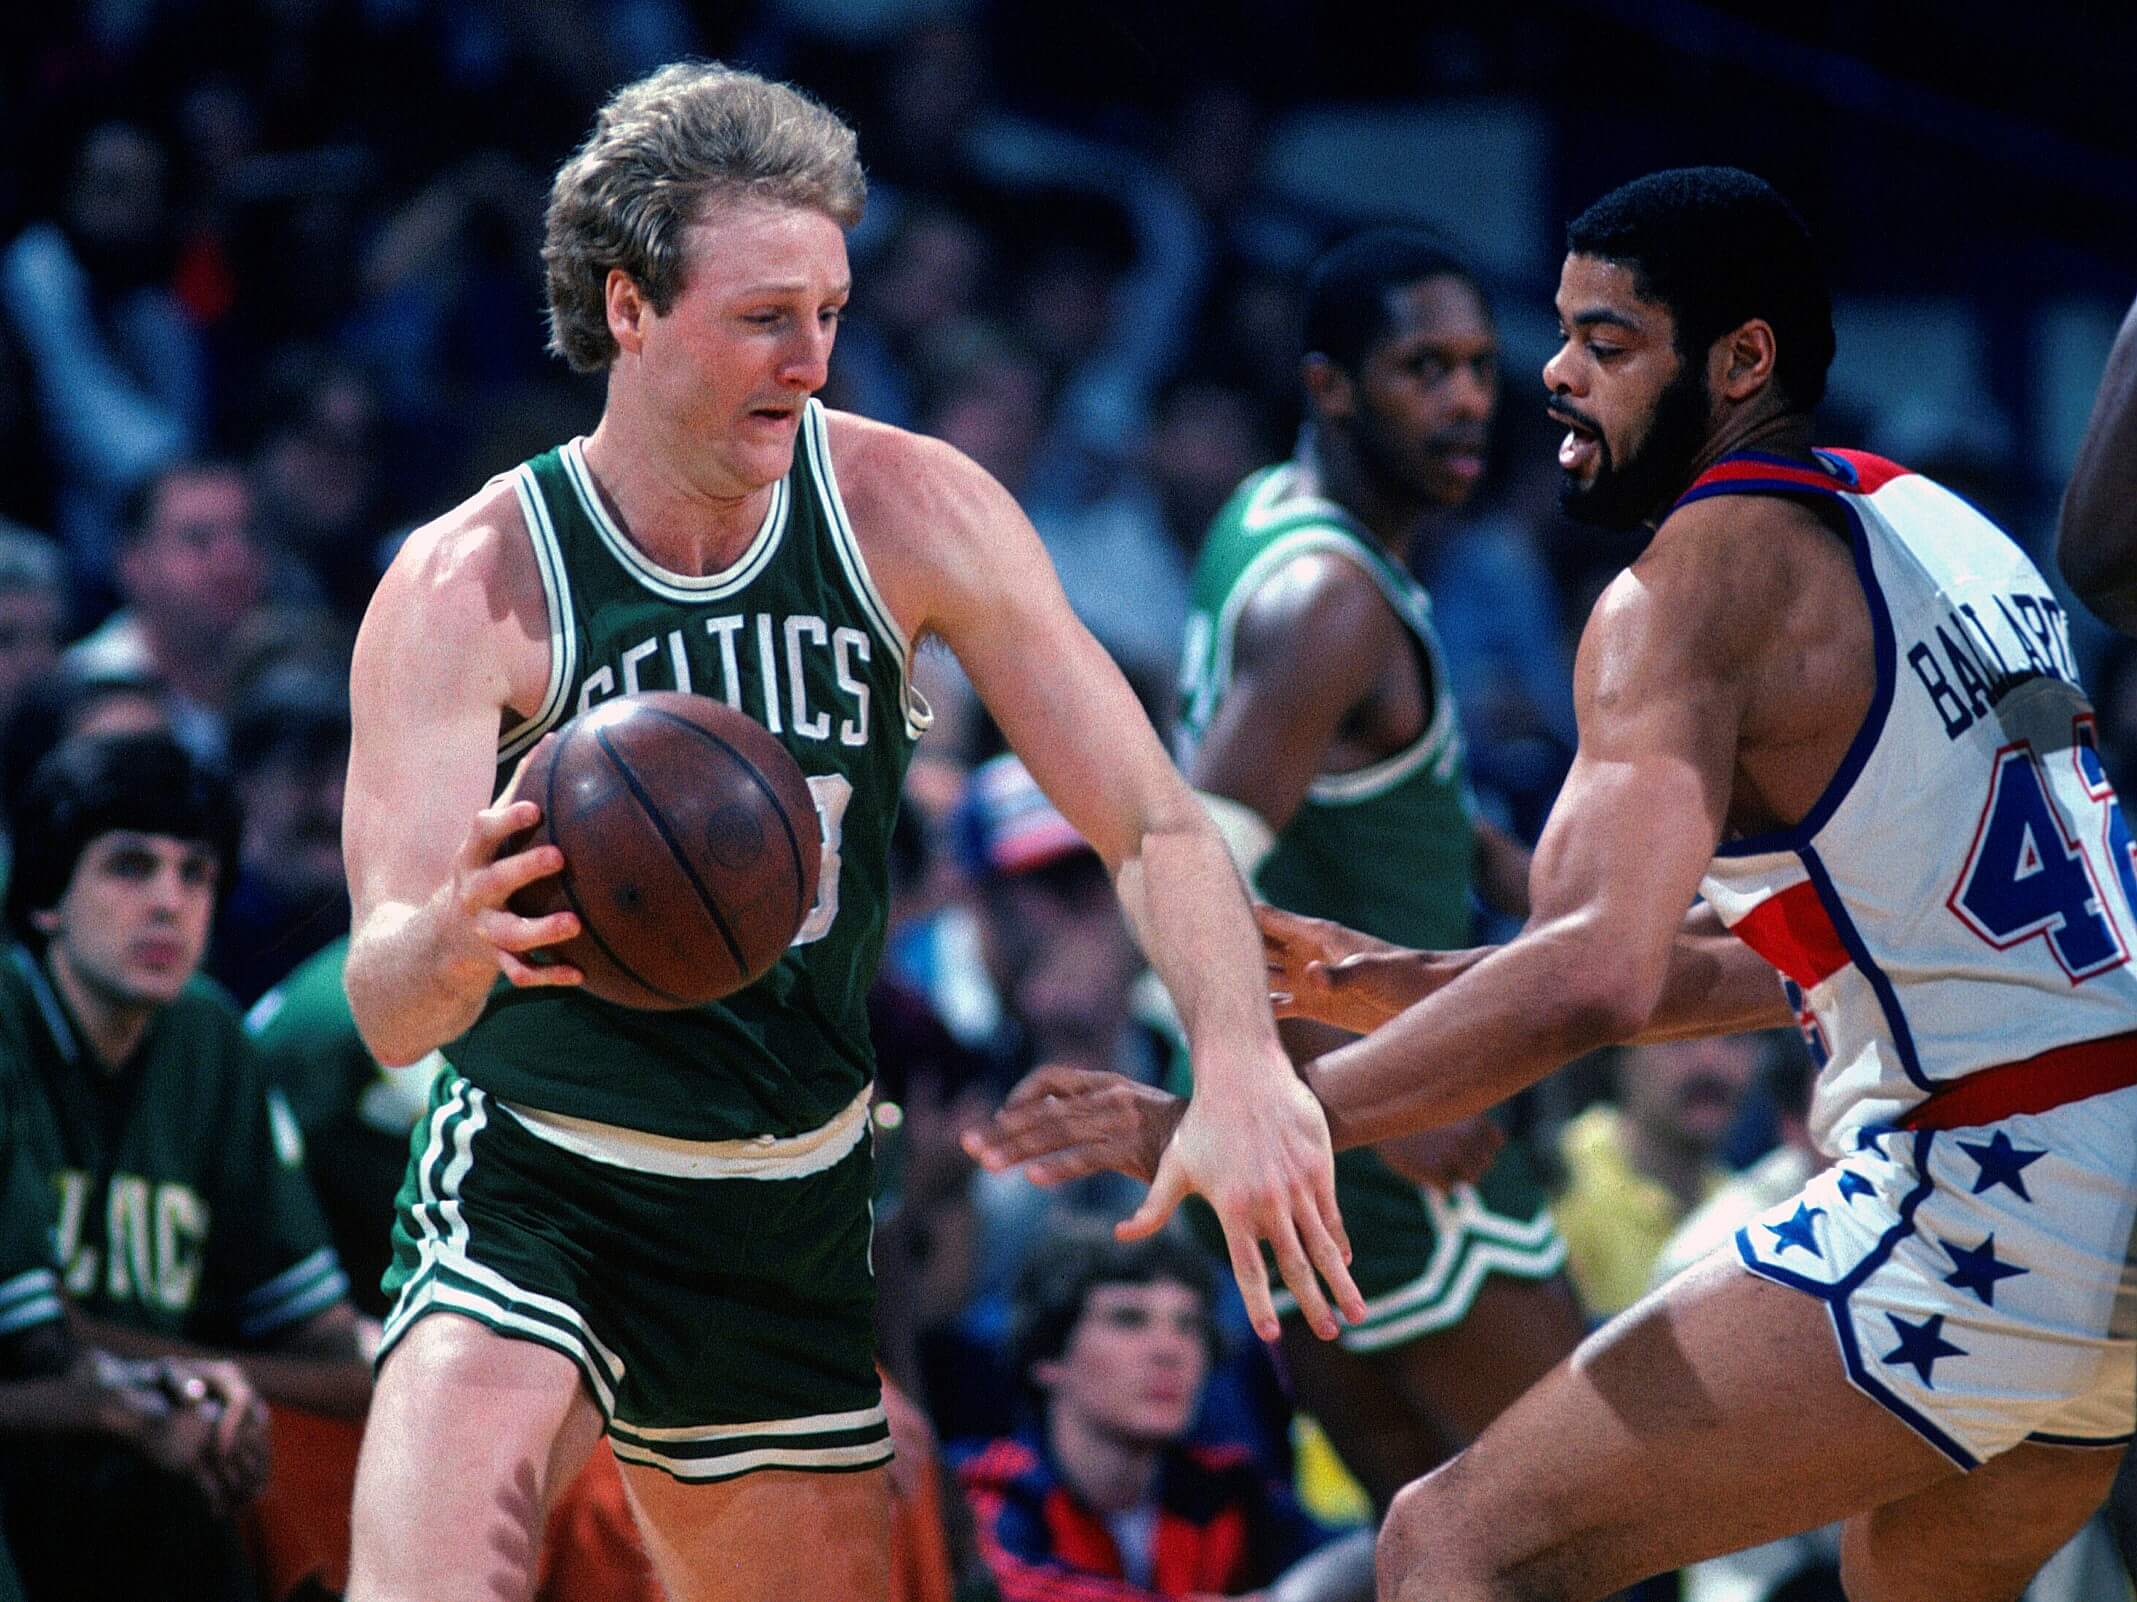 Larry Bird of the Boston Celtics drives on Greg Ballard of the Washington Bullets.